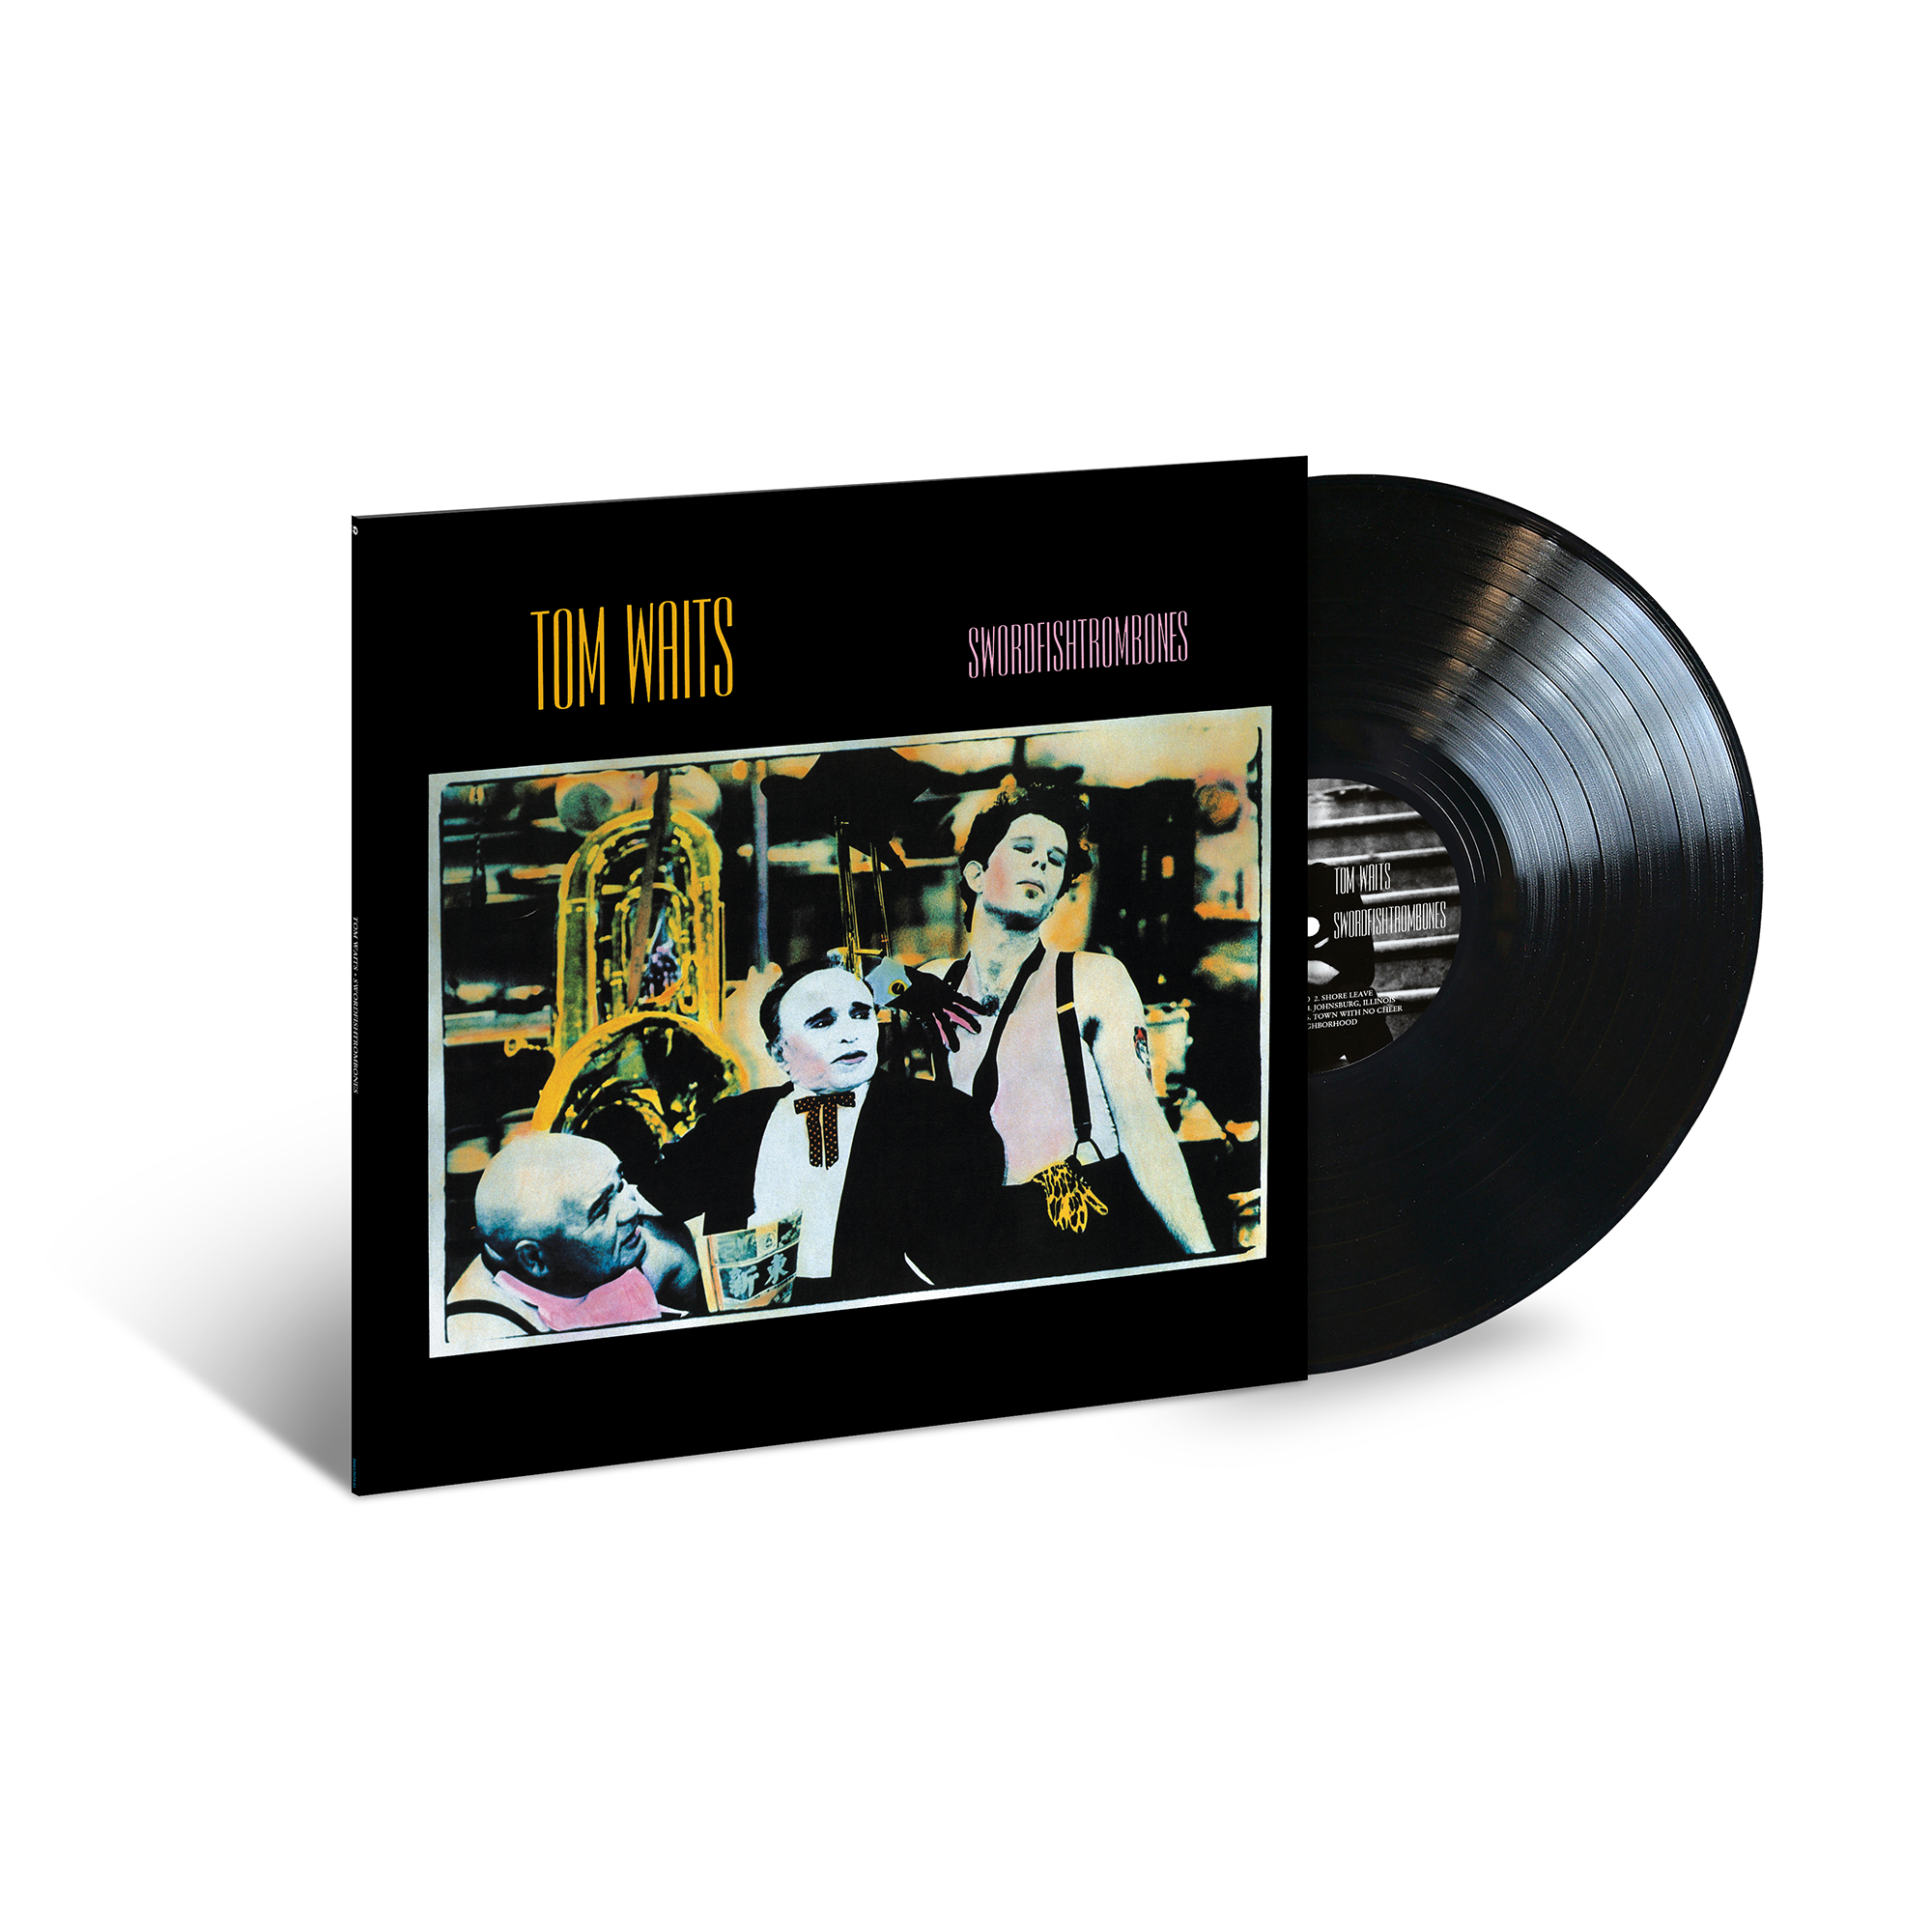 Tom Waits - Swordfishtrombones: Vinyl LP